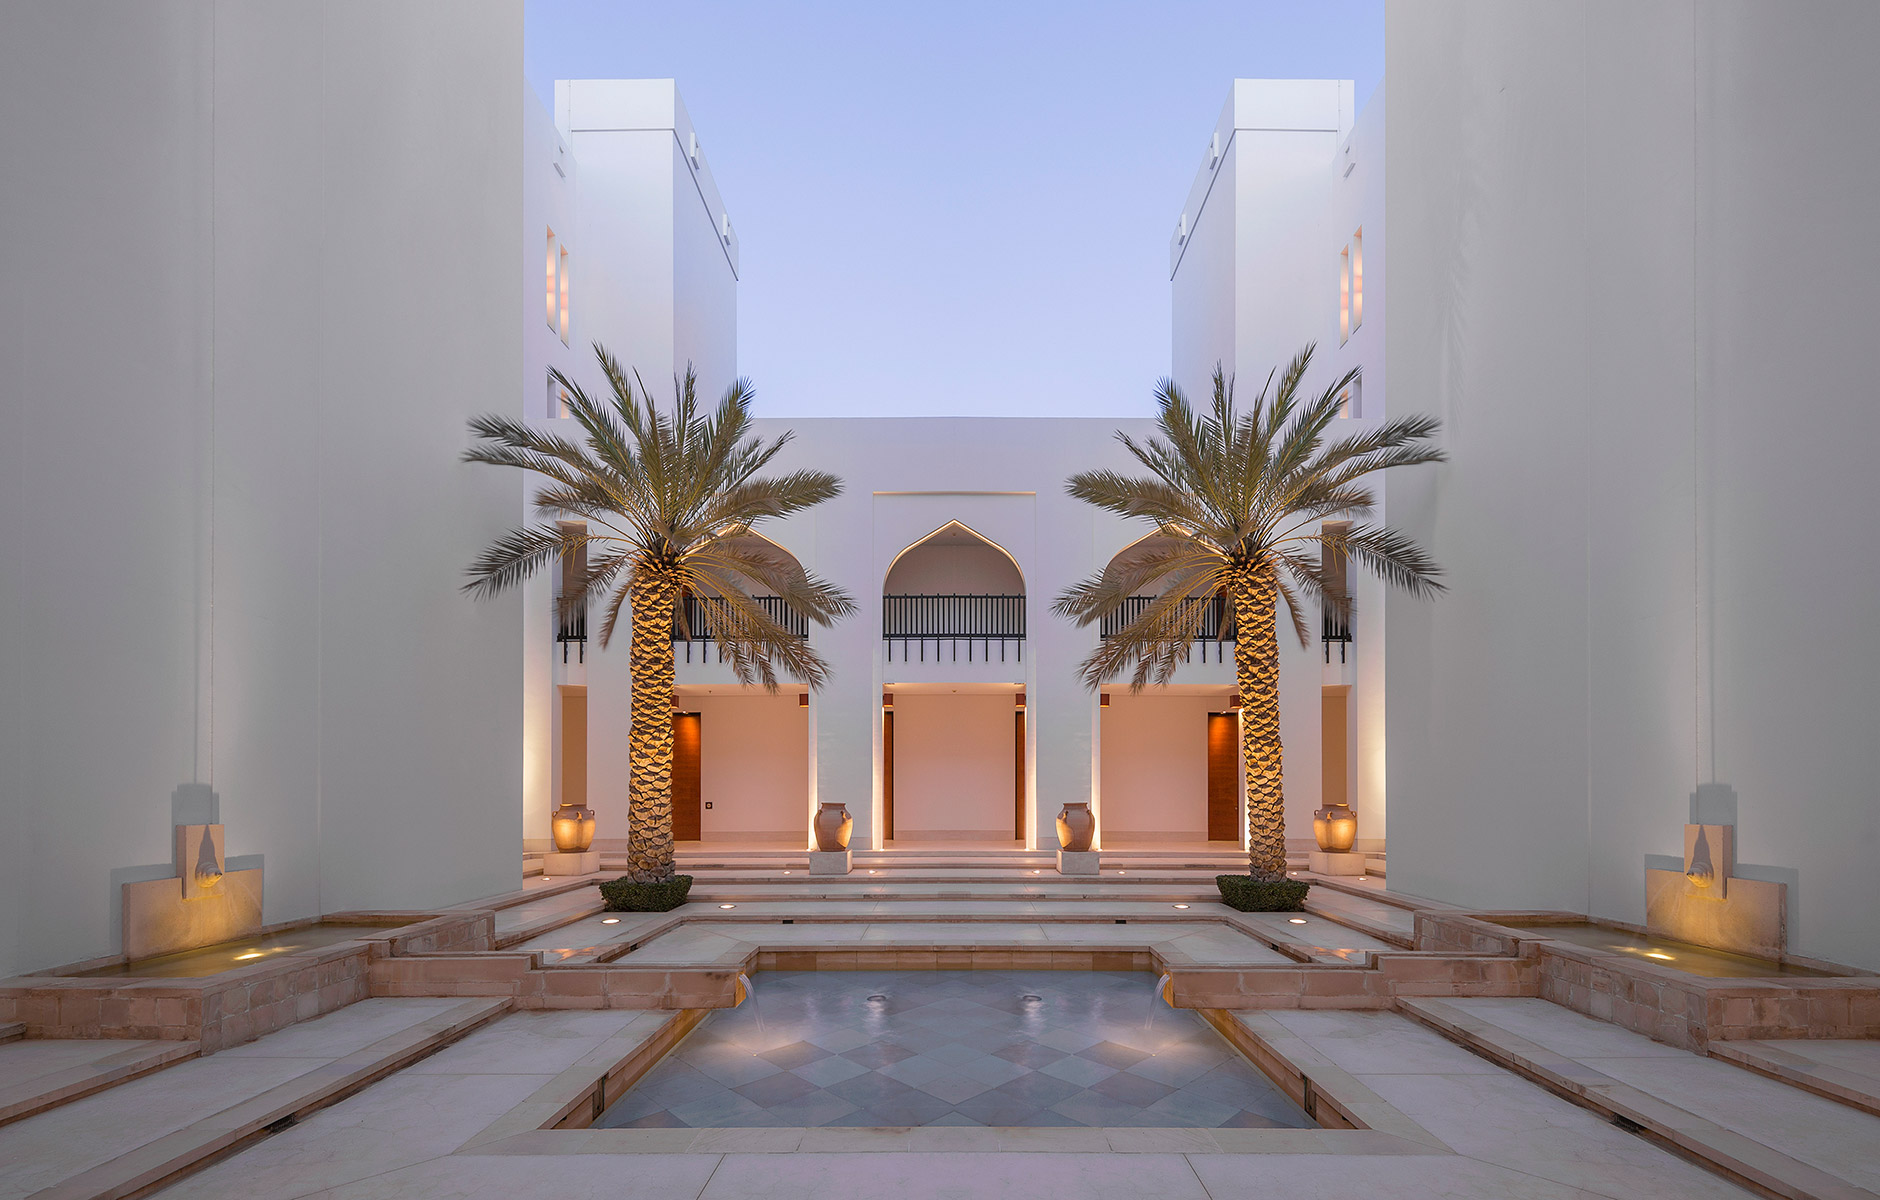 Blick auf den Innenhof des Hotels mit Pool und Palmen